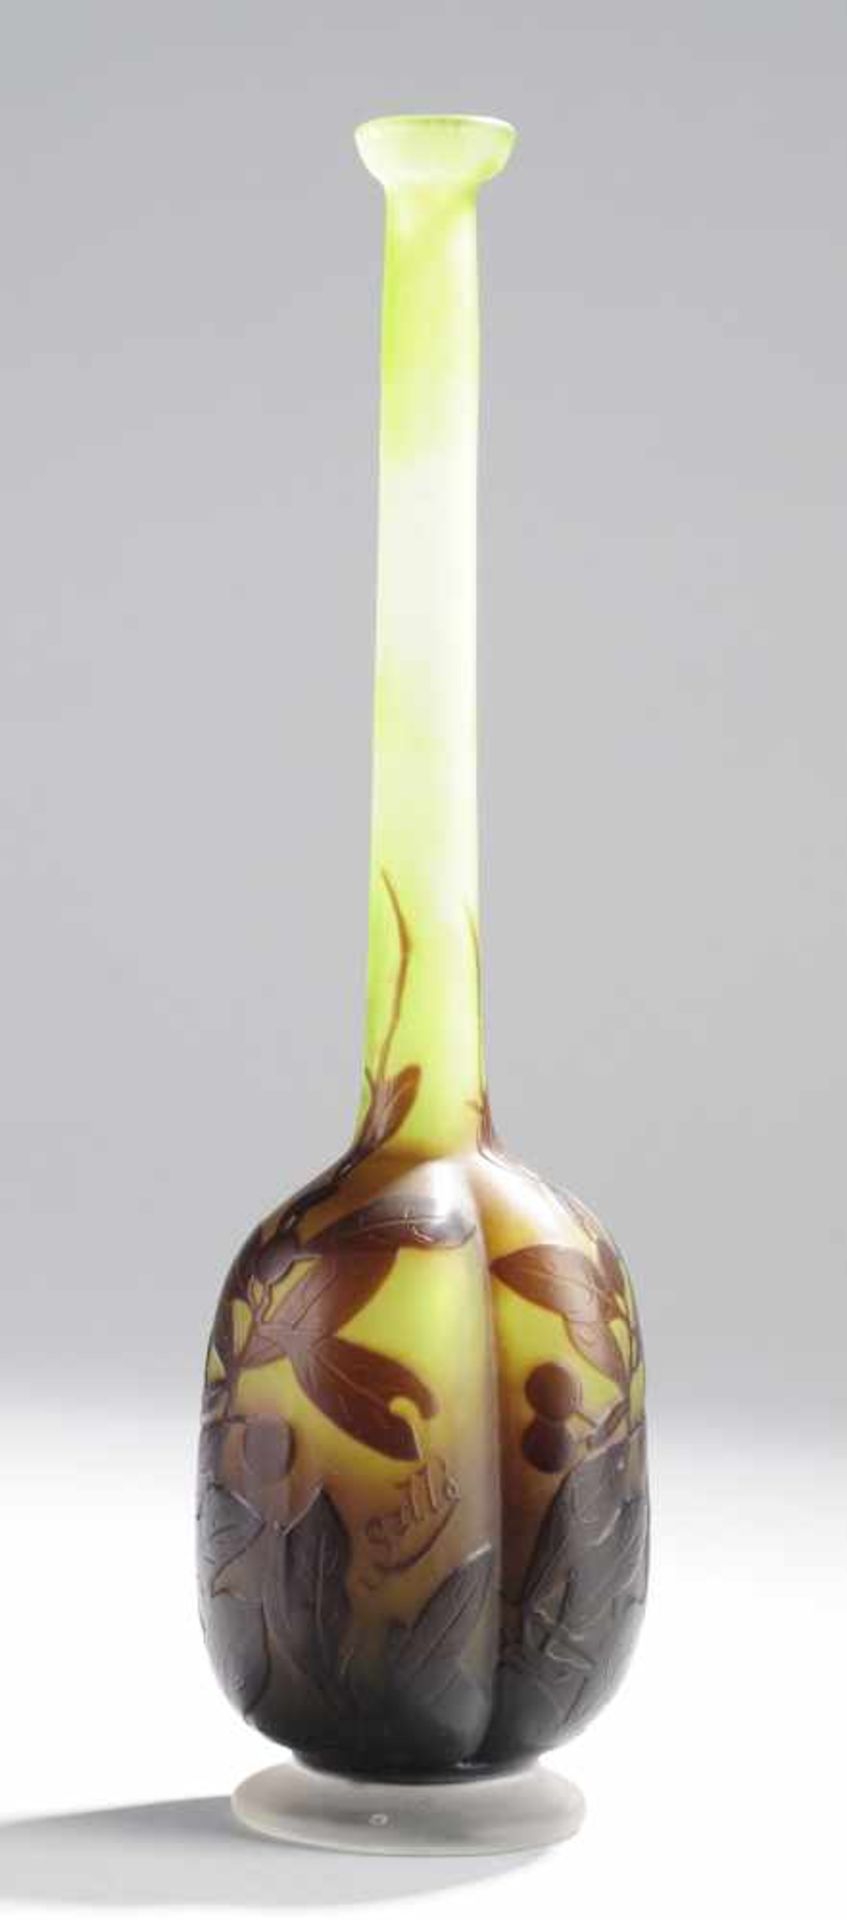 Vase mit SchlehenzweigenFarbloses Glas mit grünen Pulvereinschmelzungen, violett überfangen. - Bild 3 aus 3